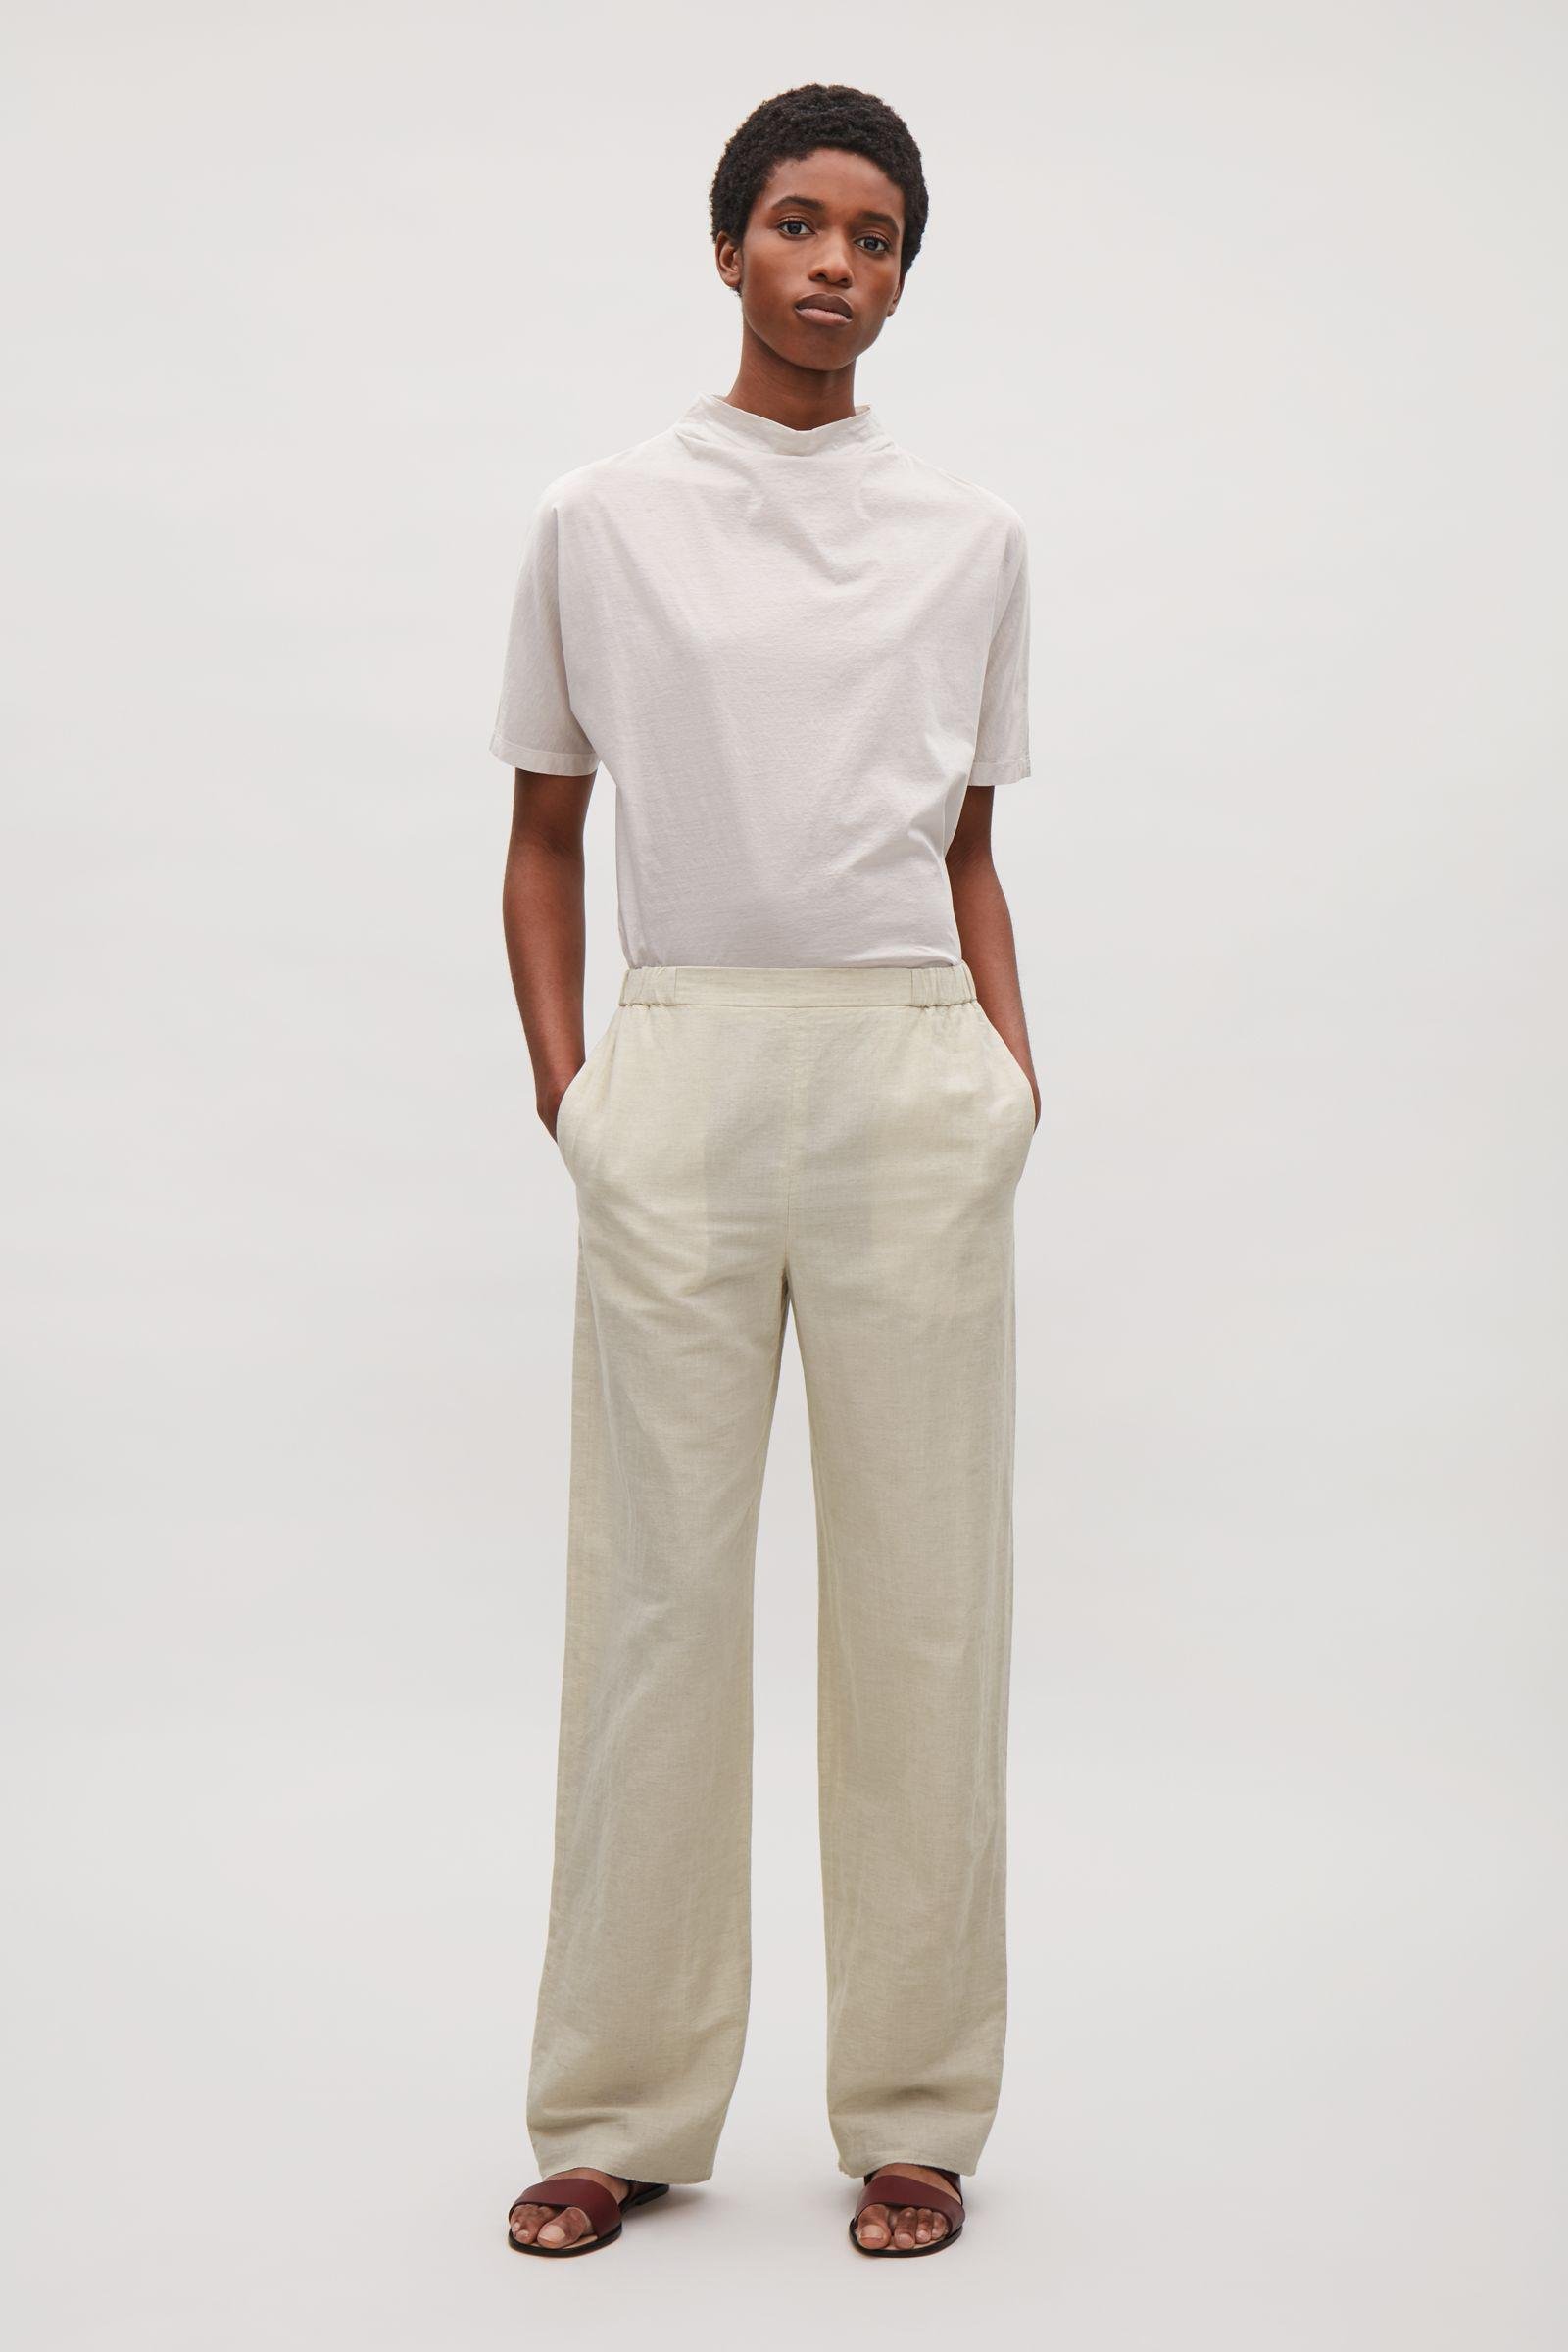 40% OFF on H&M Women Beige Wide Linen-blend Trouser on Myntra |  PaisaWapas.com